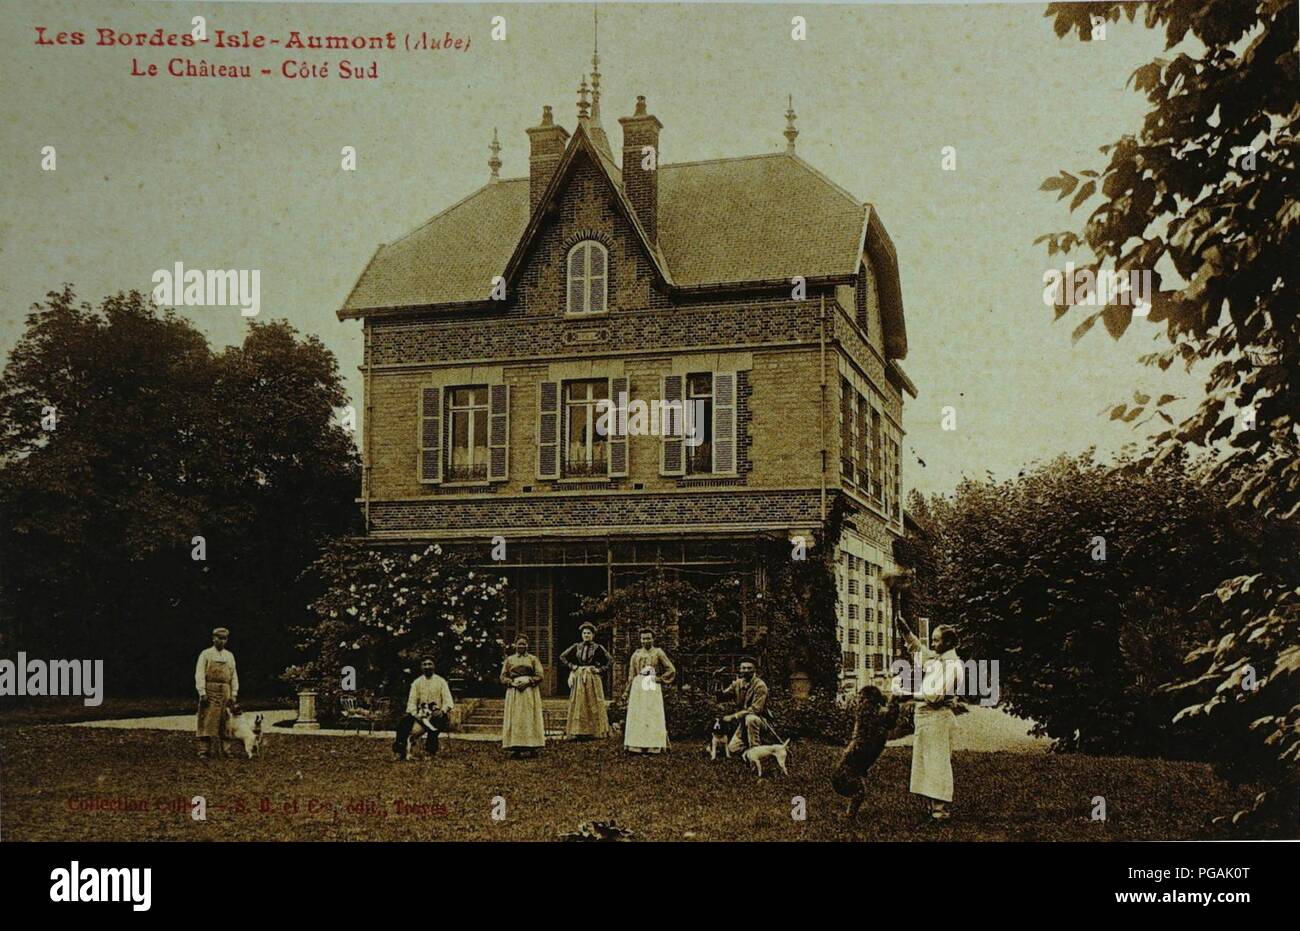 Aumont Chateau des bordes 05336. Foto Stock